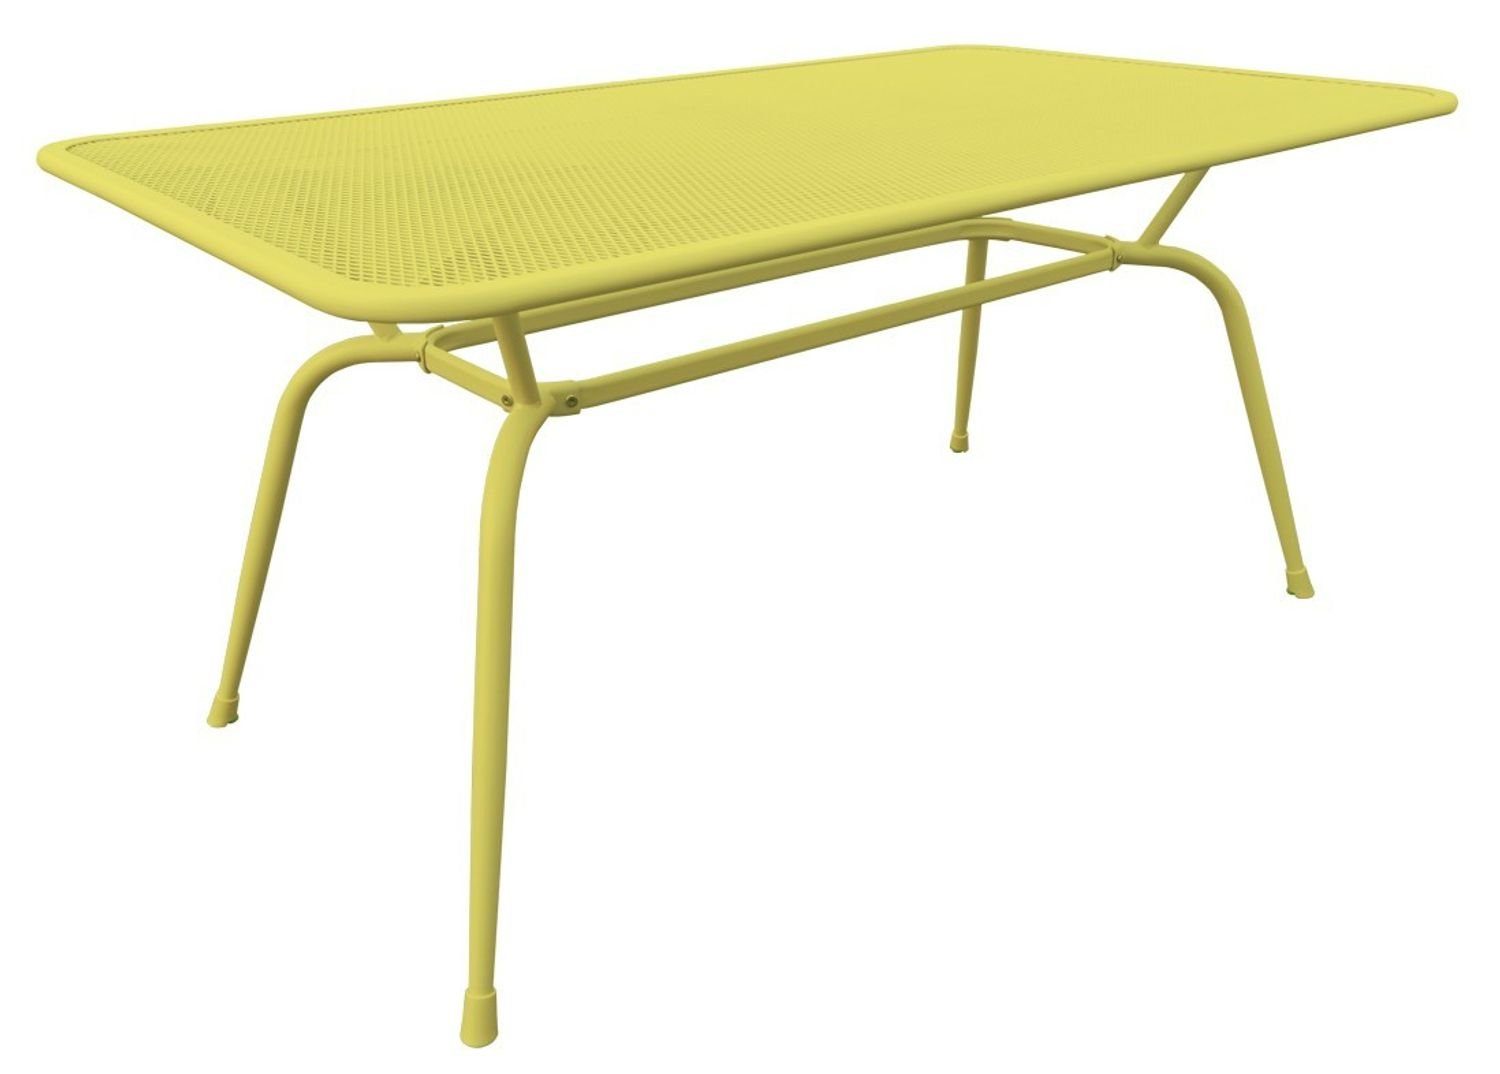 MWH Streckmetalltisch Tisch Conello gelb MWH-Tisch 160x90x74cm Gartentisch Gartentisch